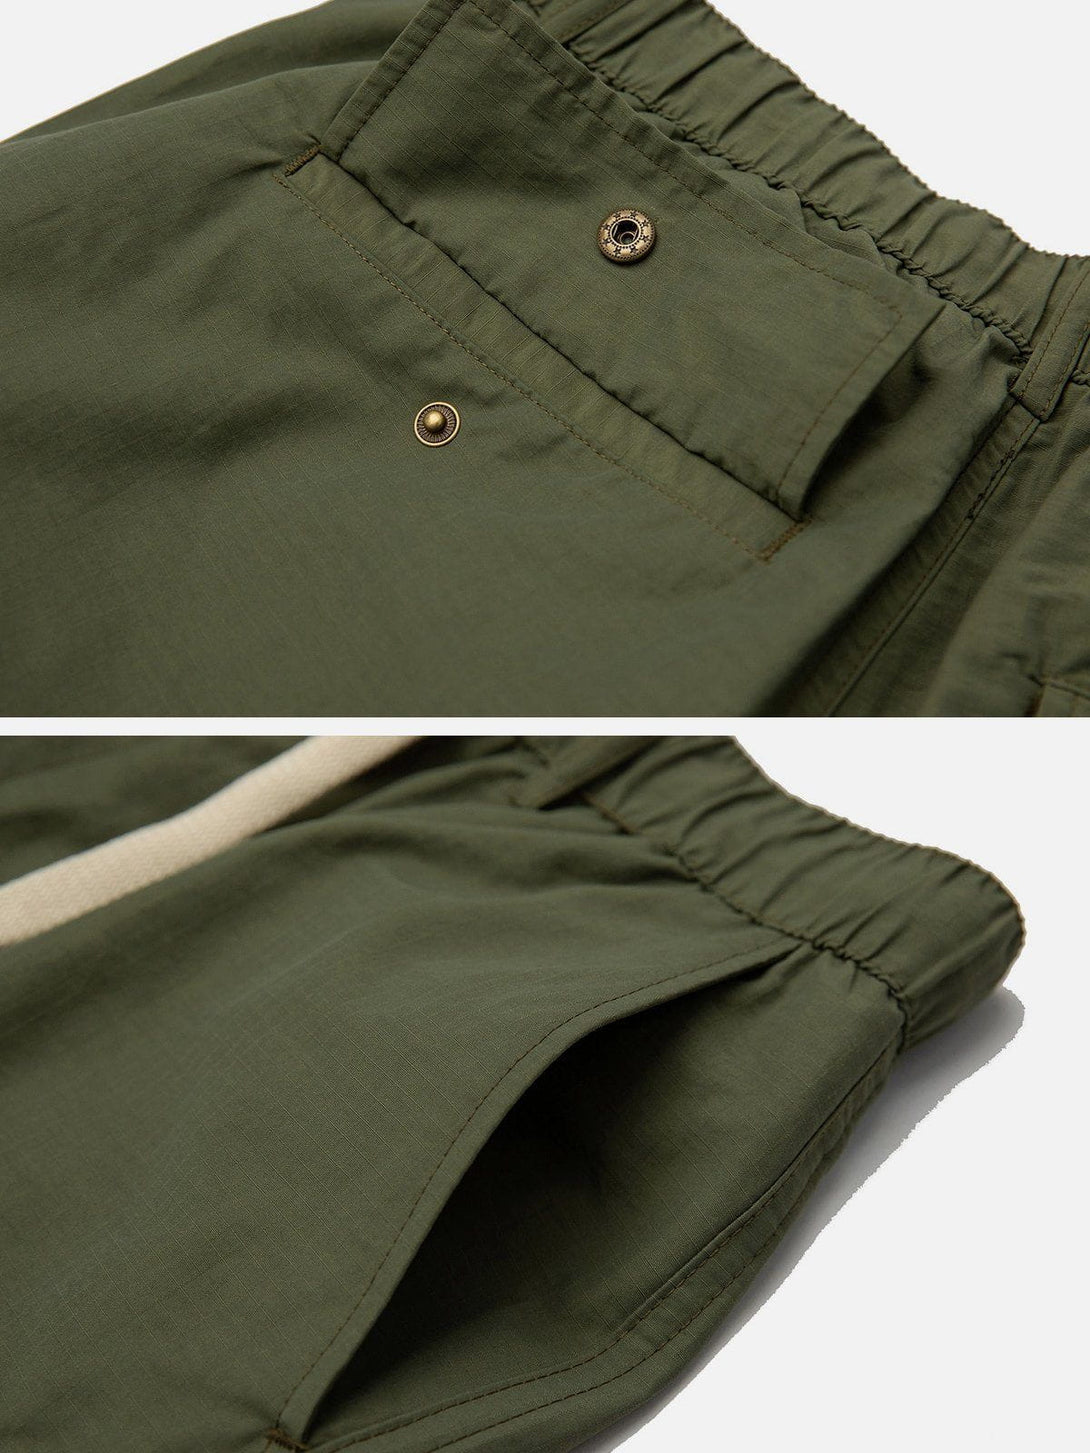 Levefly - Large Pocket Shorts - Streetwear Fashion - levefly.com